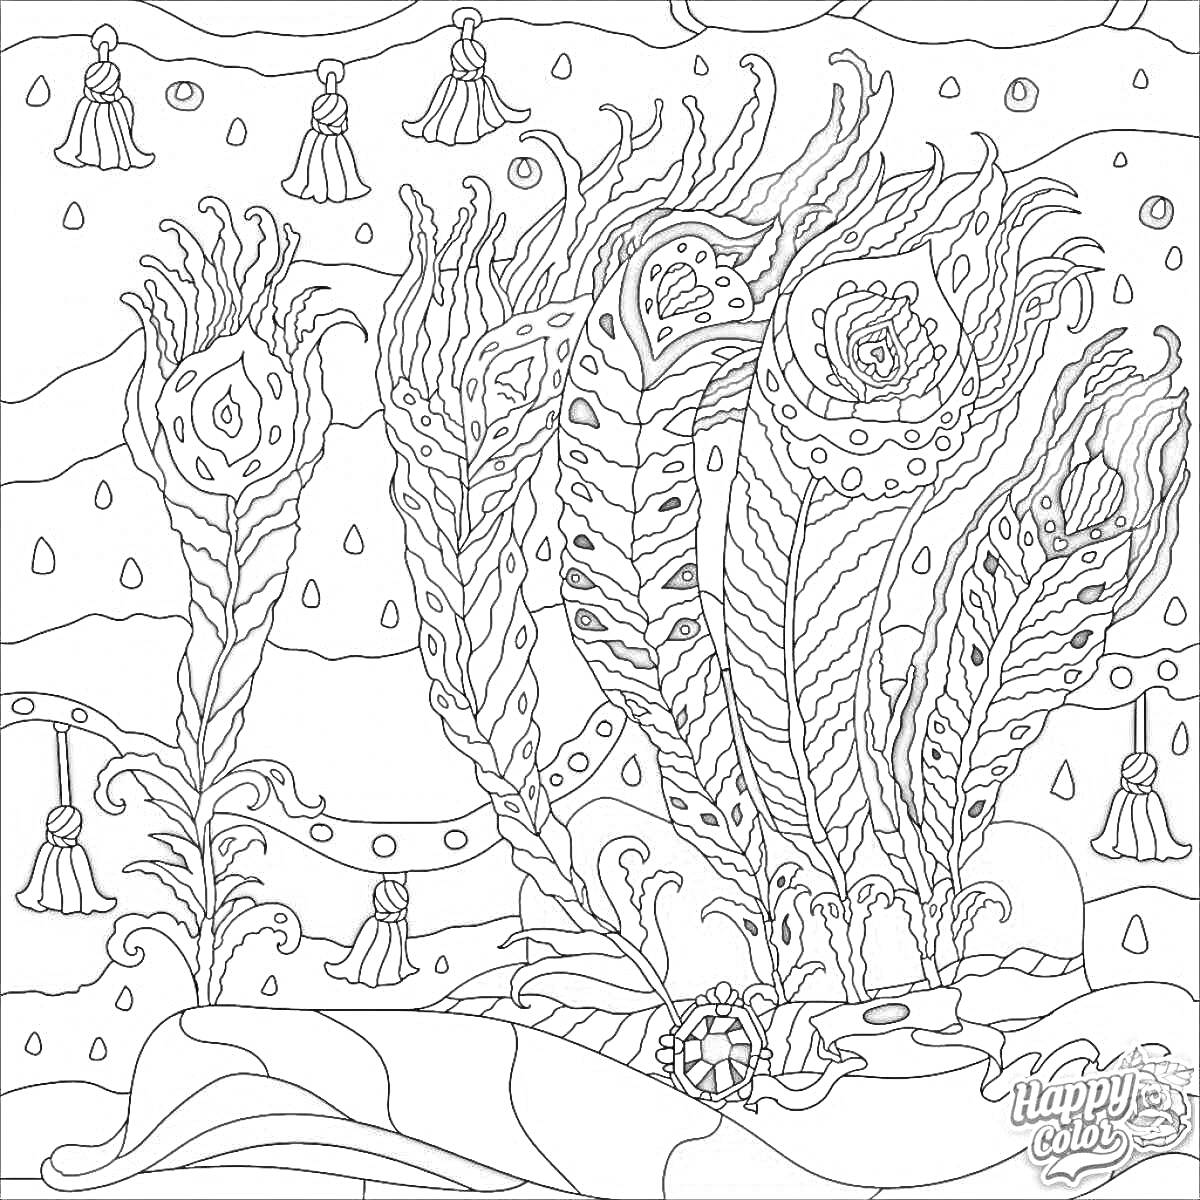 Раскраска Абстрактная композиция с разноцветными павлиньими перьями на фоне ночного неба с звездами и желтыми подвесками